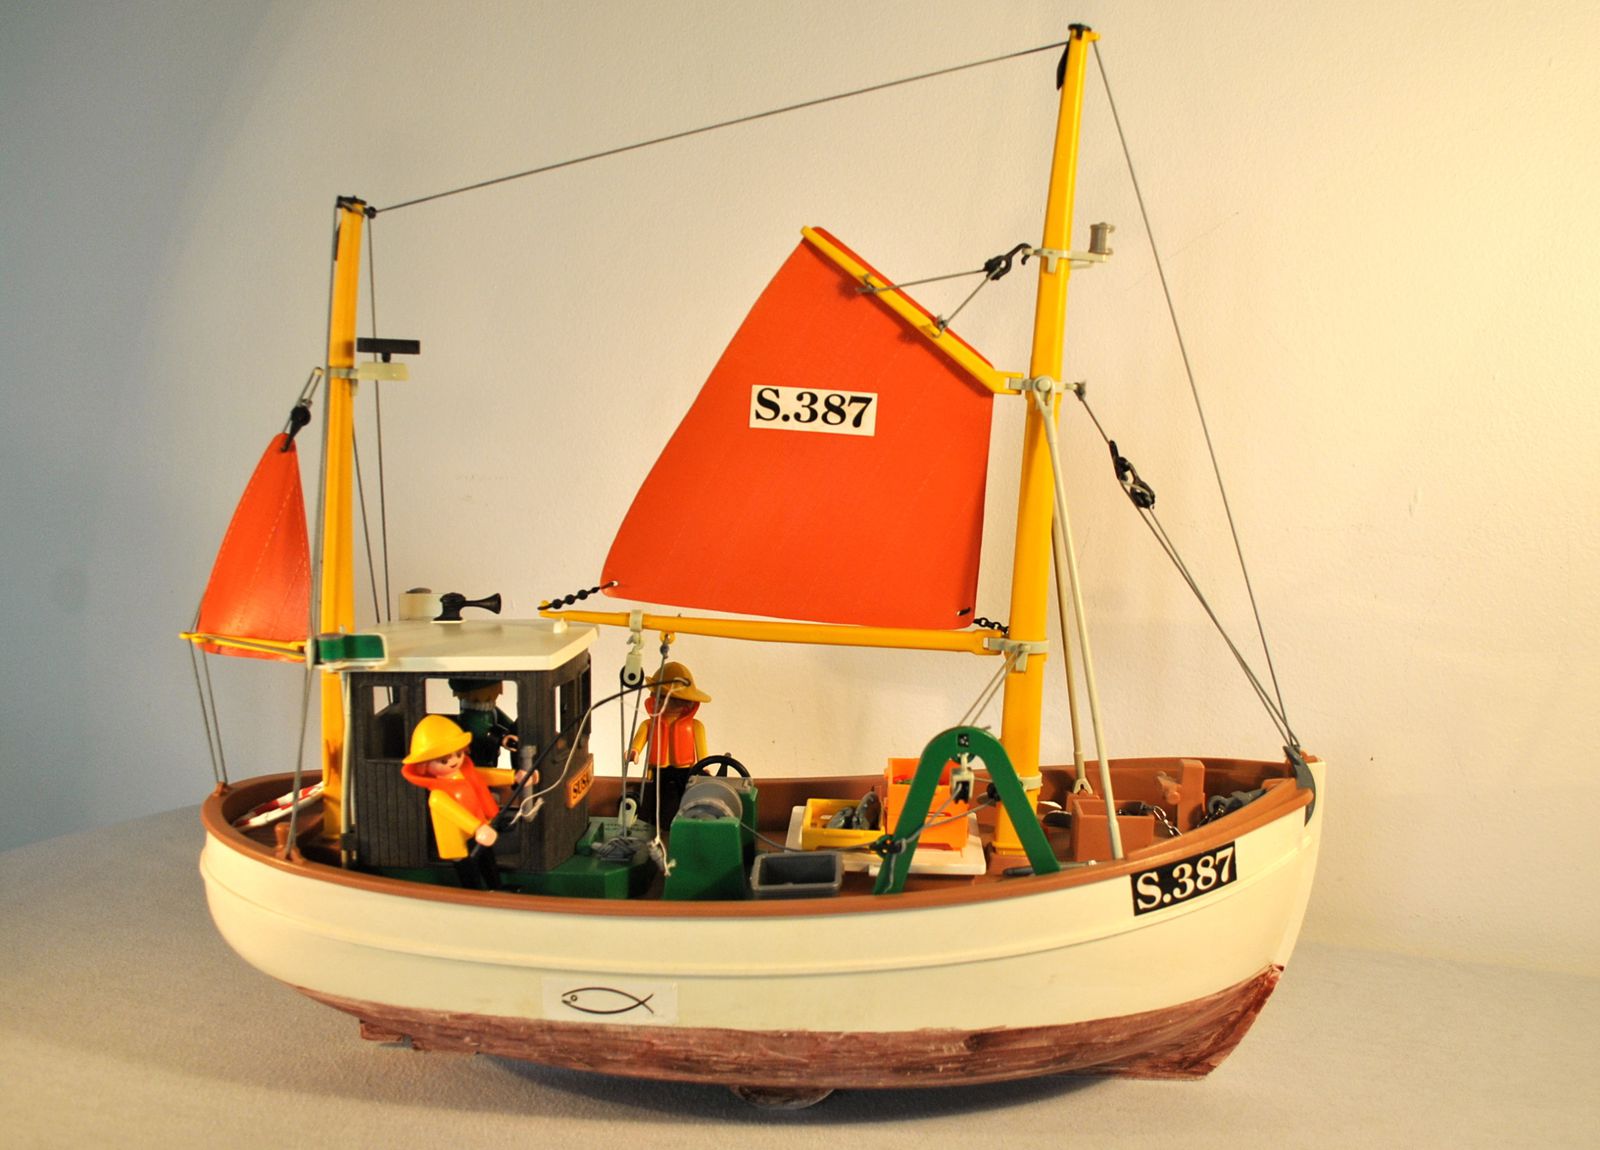 Bateau de pêcheur Playmobil : "Suzanne" - LeS pEnDuLes à 10h10